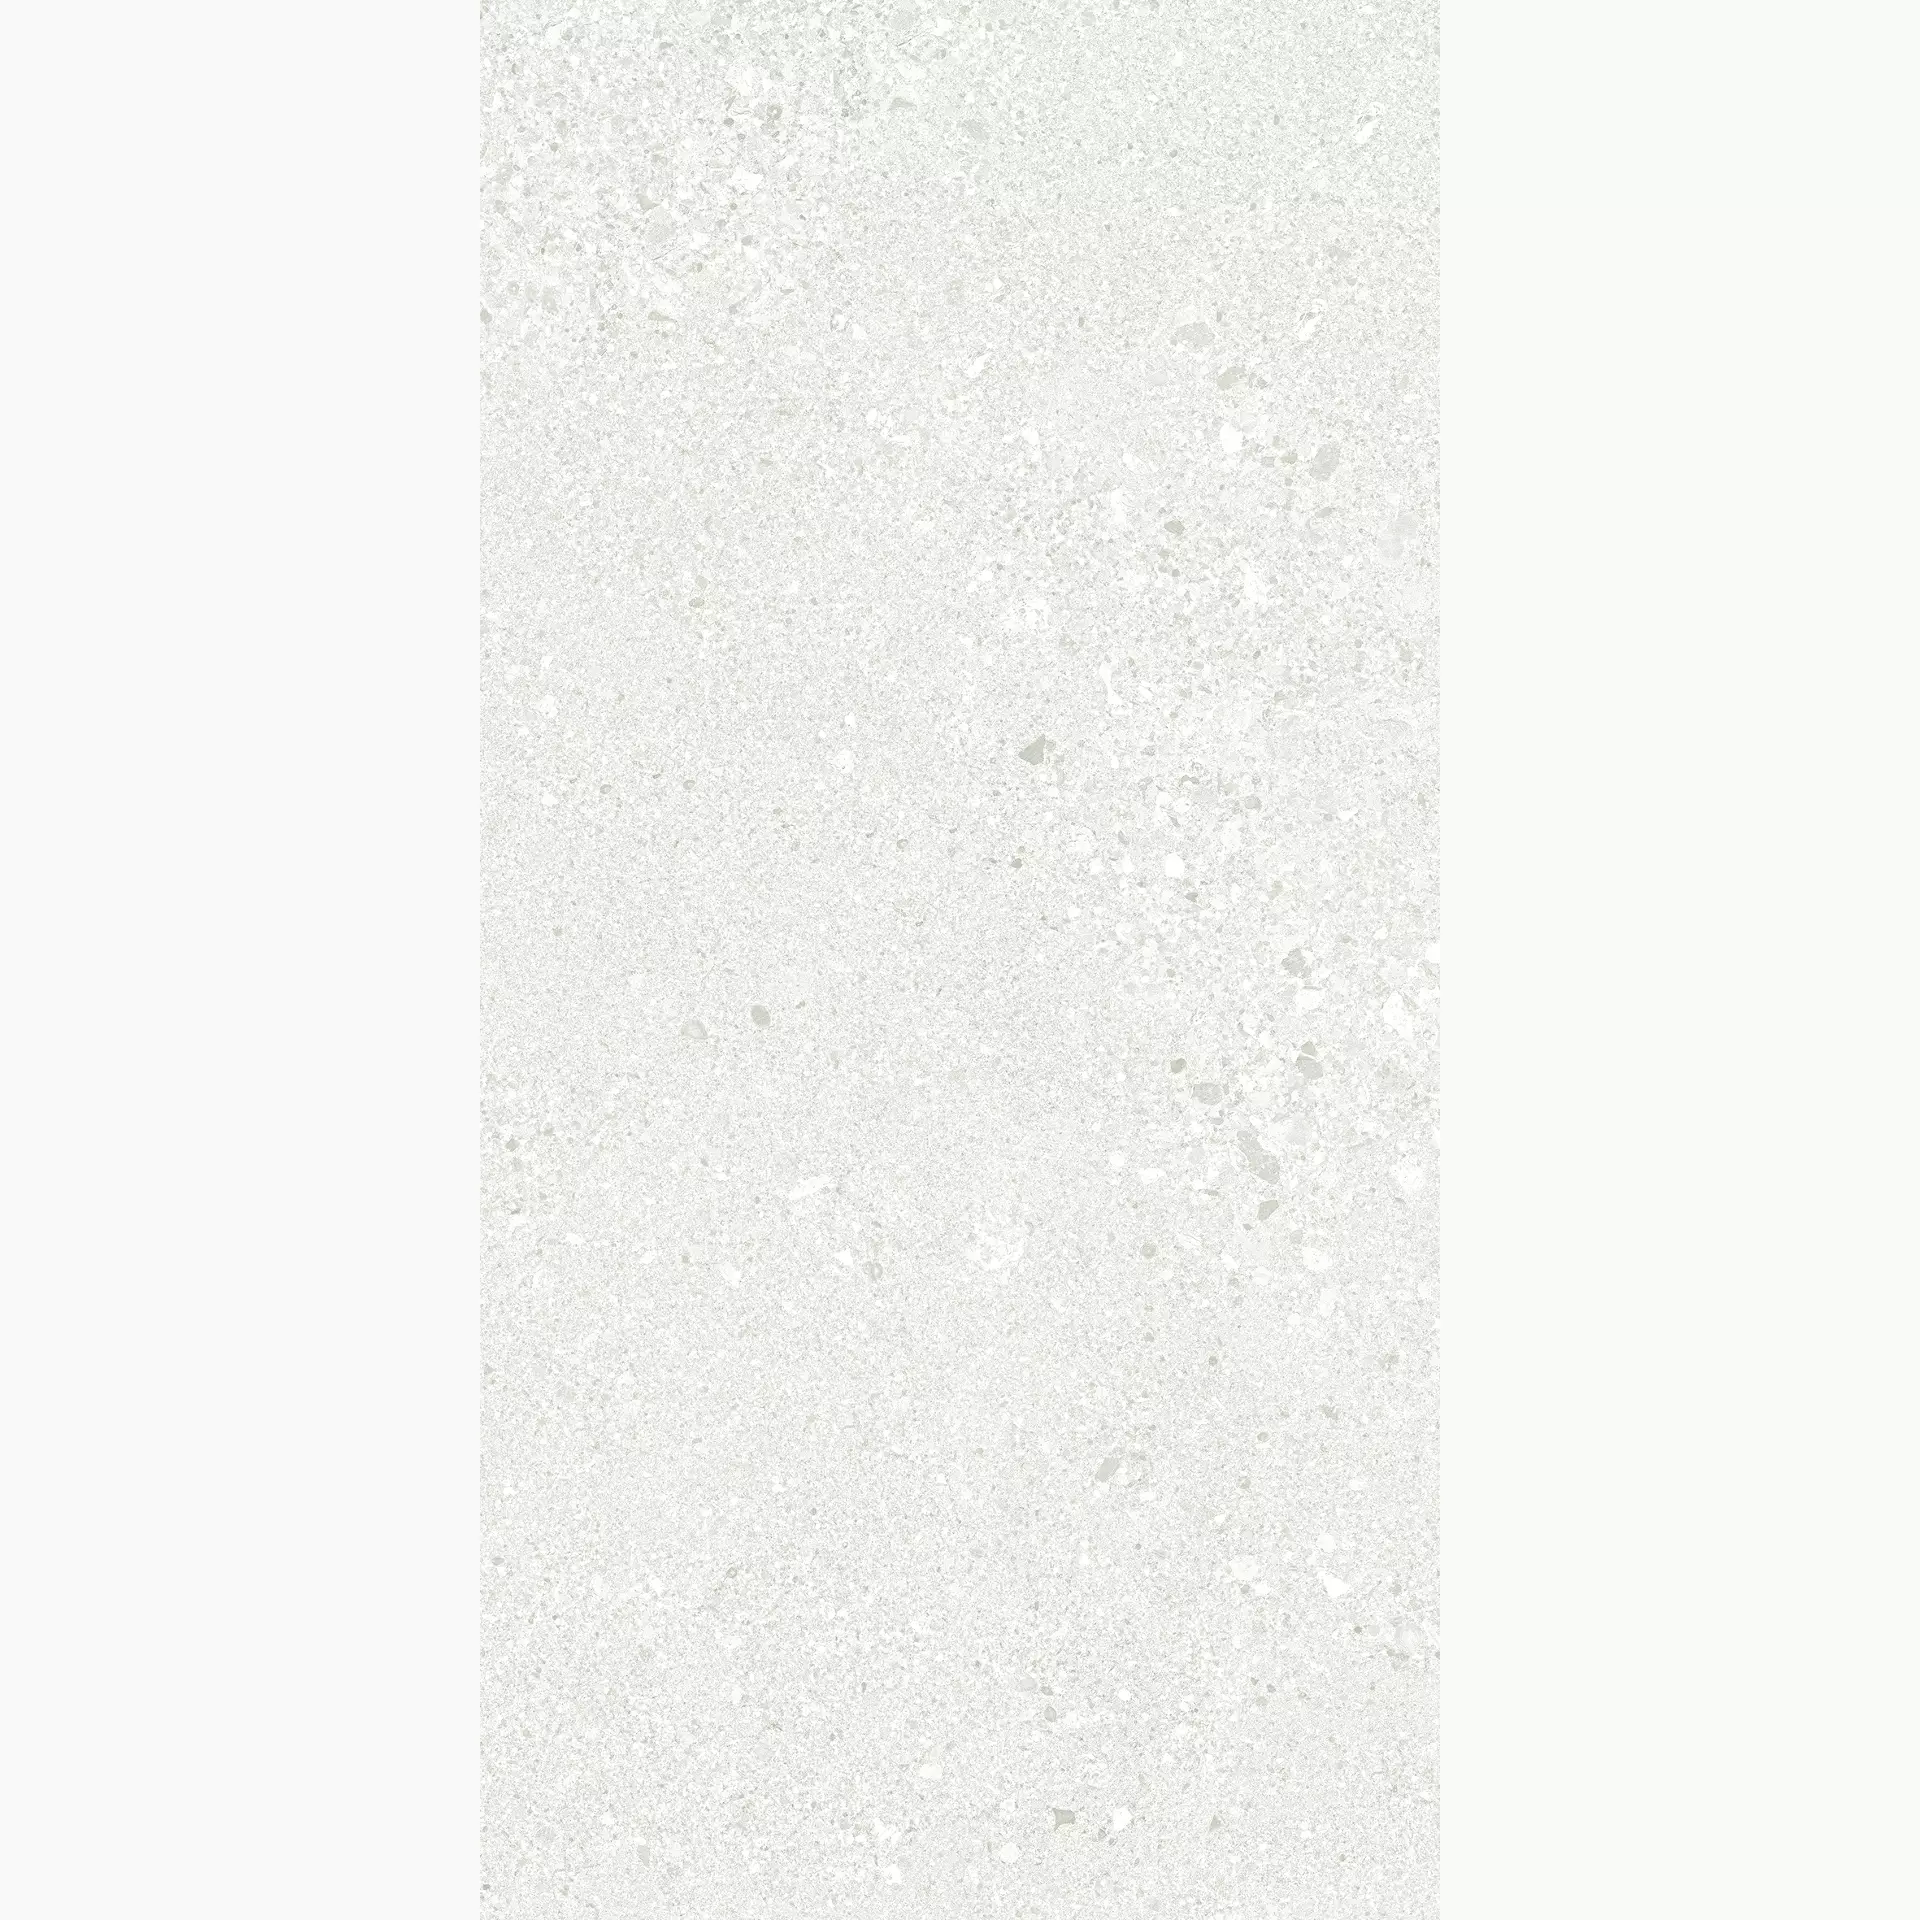 Ergon Grain Stone Rough Grain White Naturale E0CL 30x60cm rectified 9,5mm